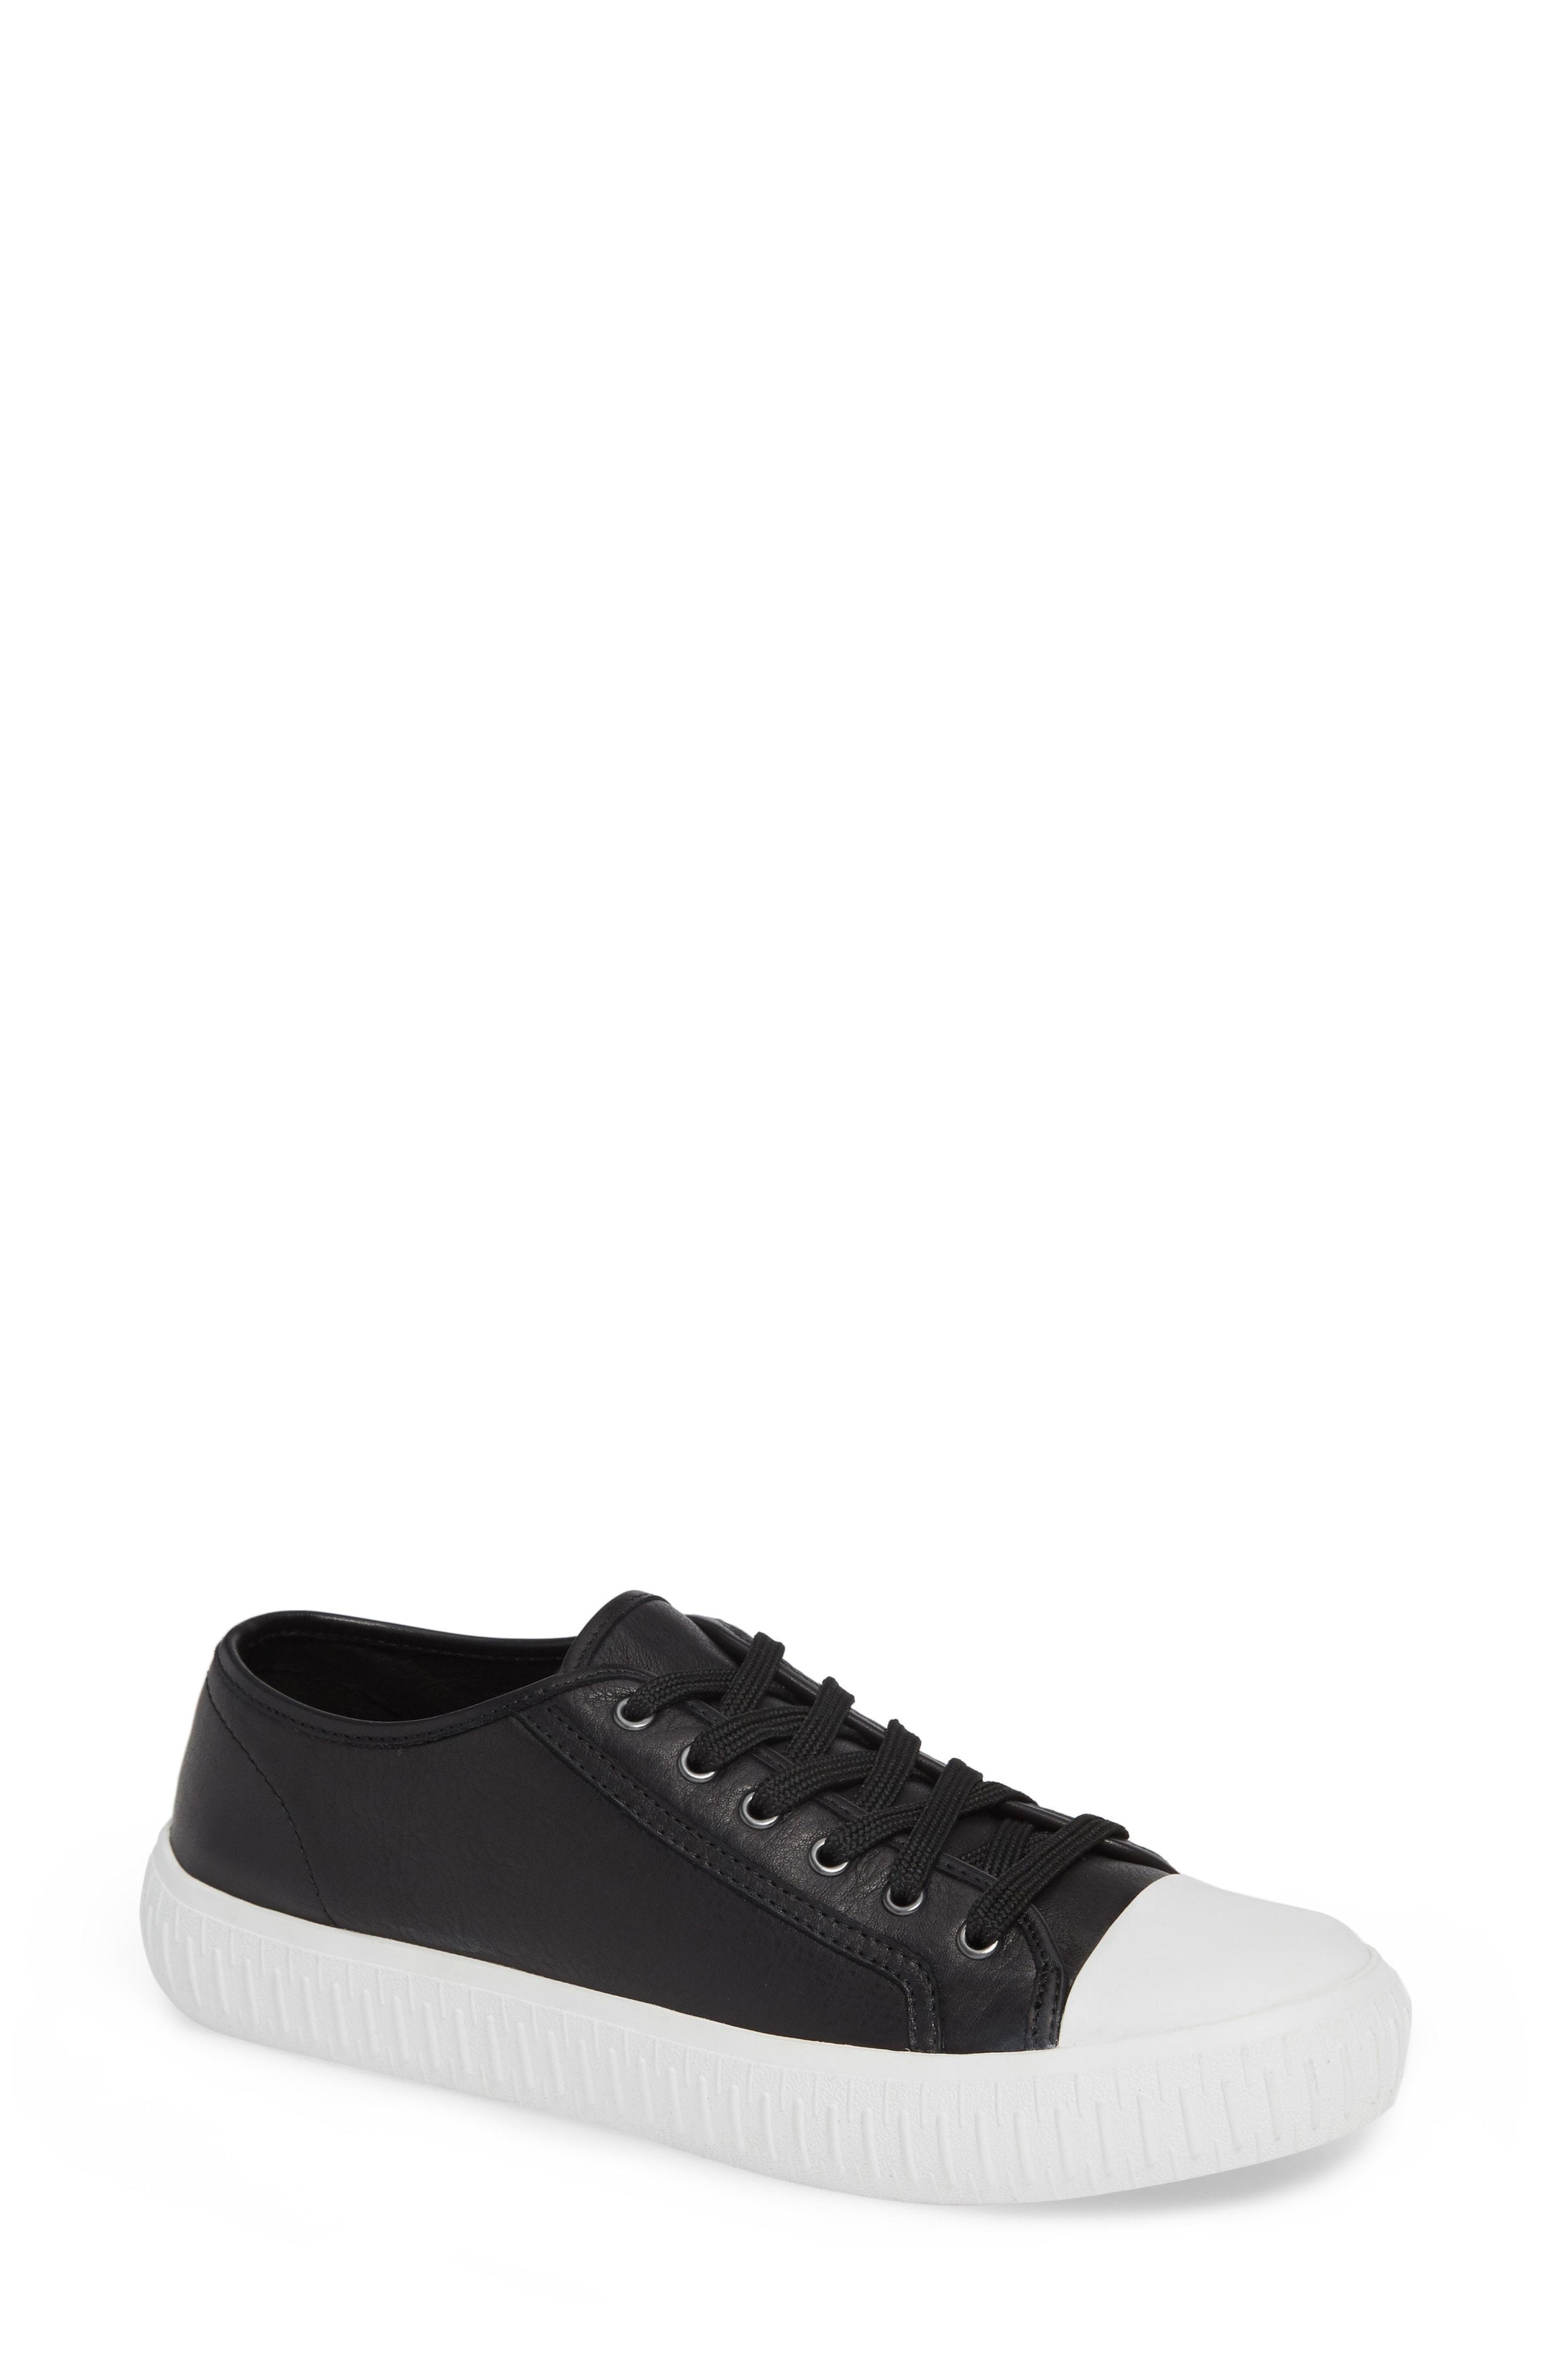 Eileen Fisher Nod Sneaker, $175 